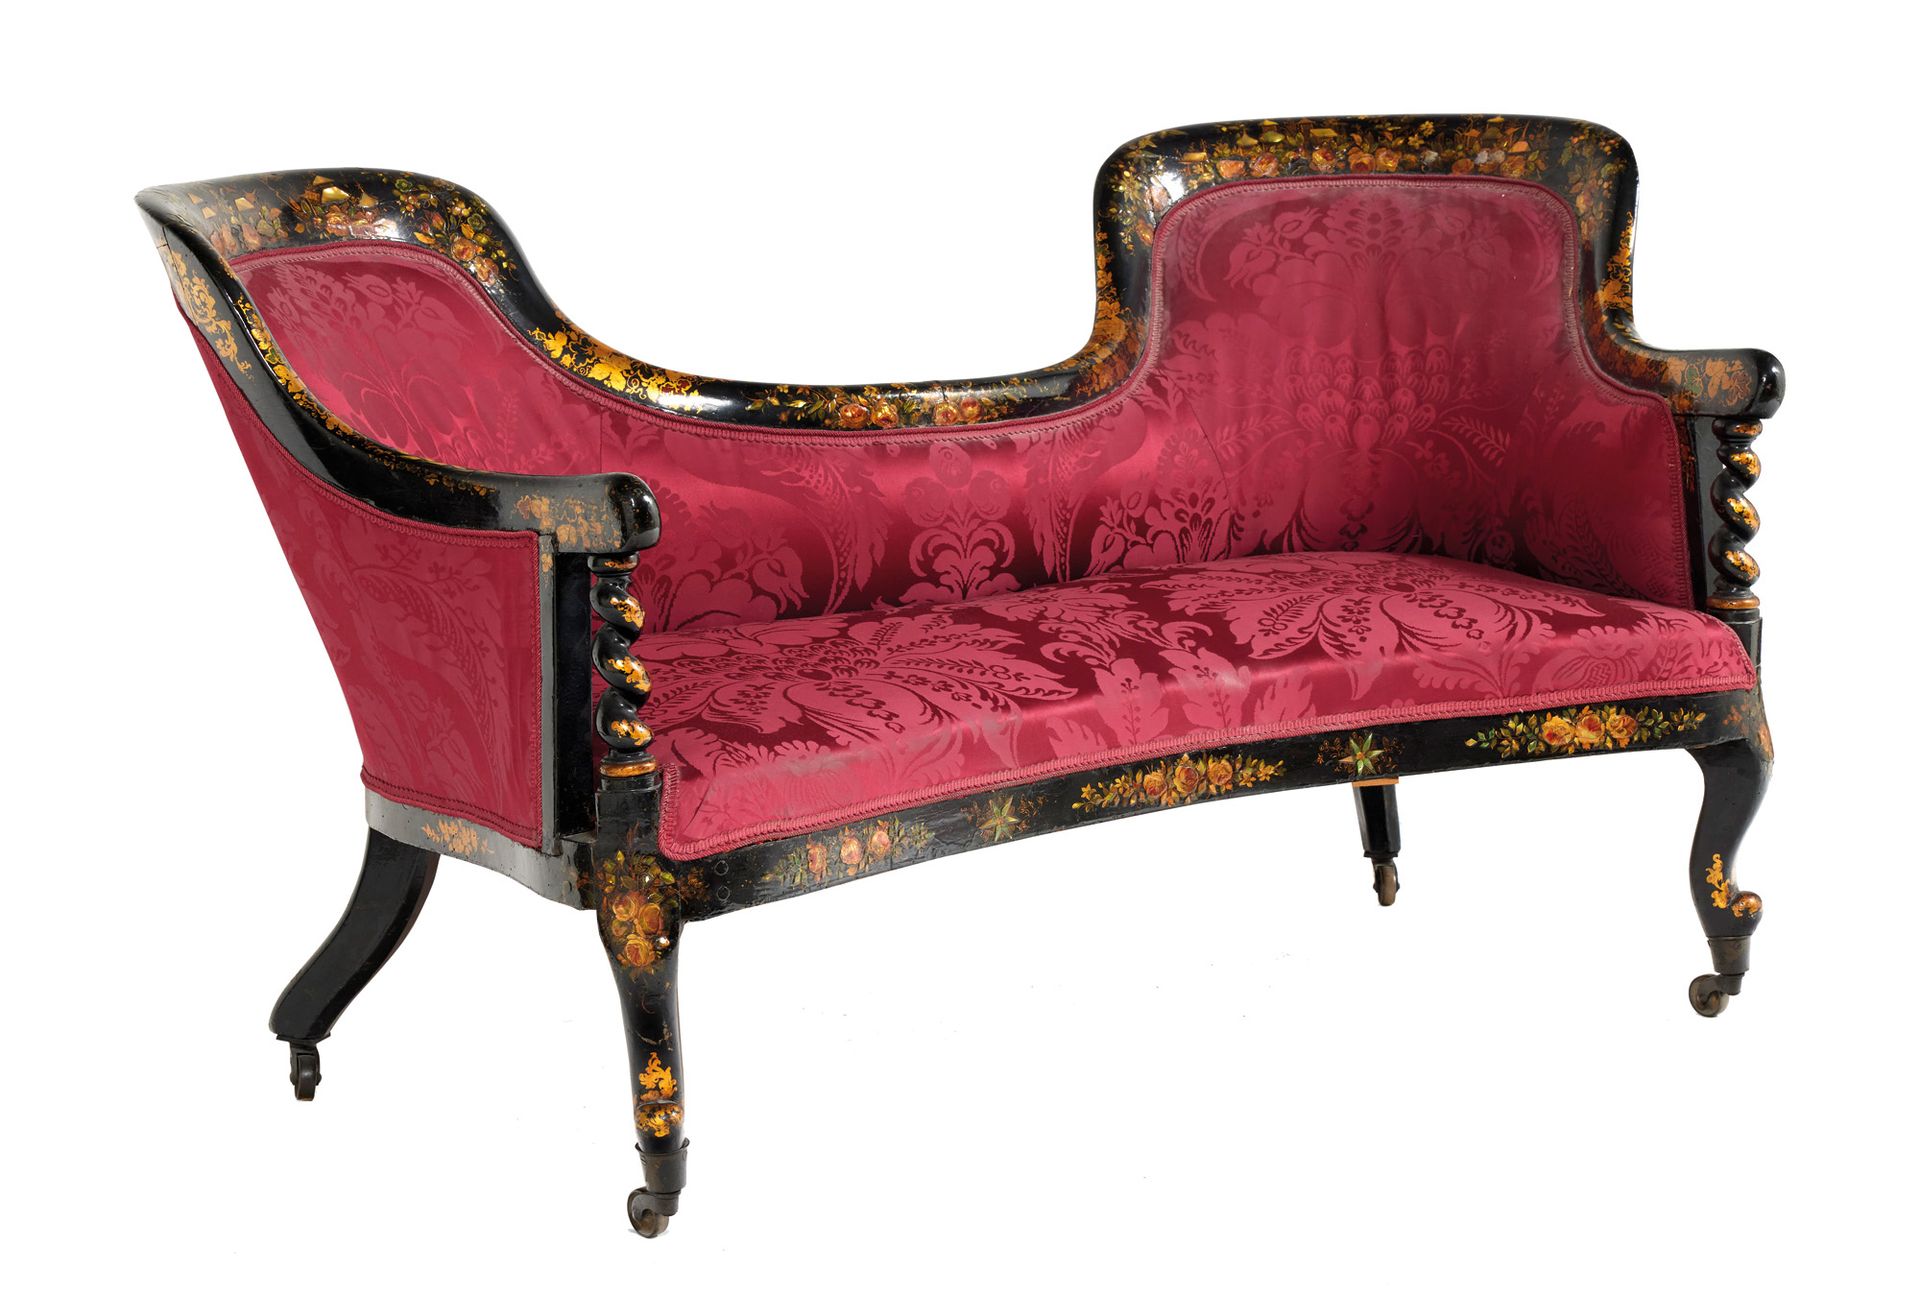 Canapé 沙发

一张发黑的木质沙发，上面有镀金和彩绘的花和藤叶的多色装饰。扶手上有扭曲的柱子，凸起的前腿和带脚轮的马刀形后腿。

拿破仑三世时期

高：8&hellip;